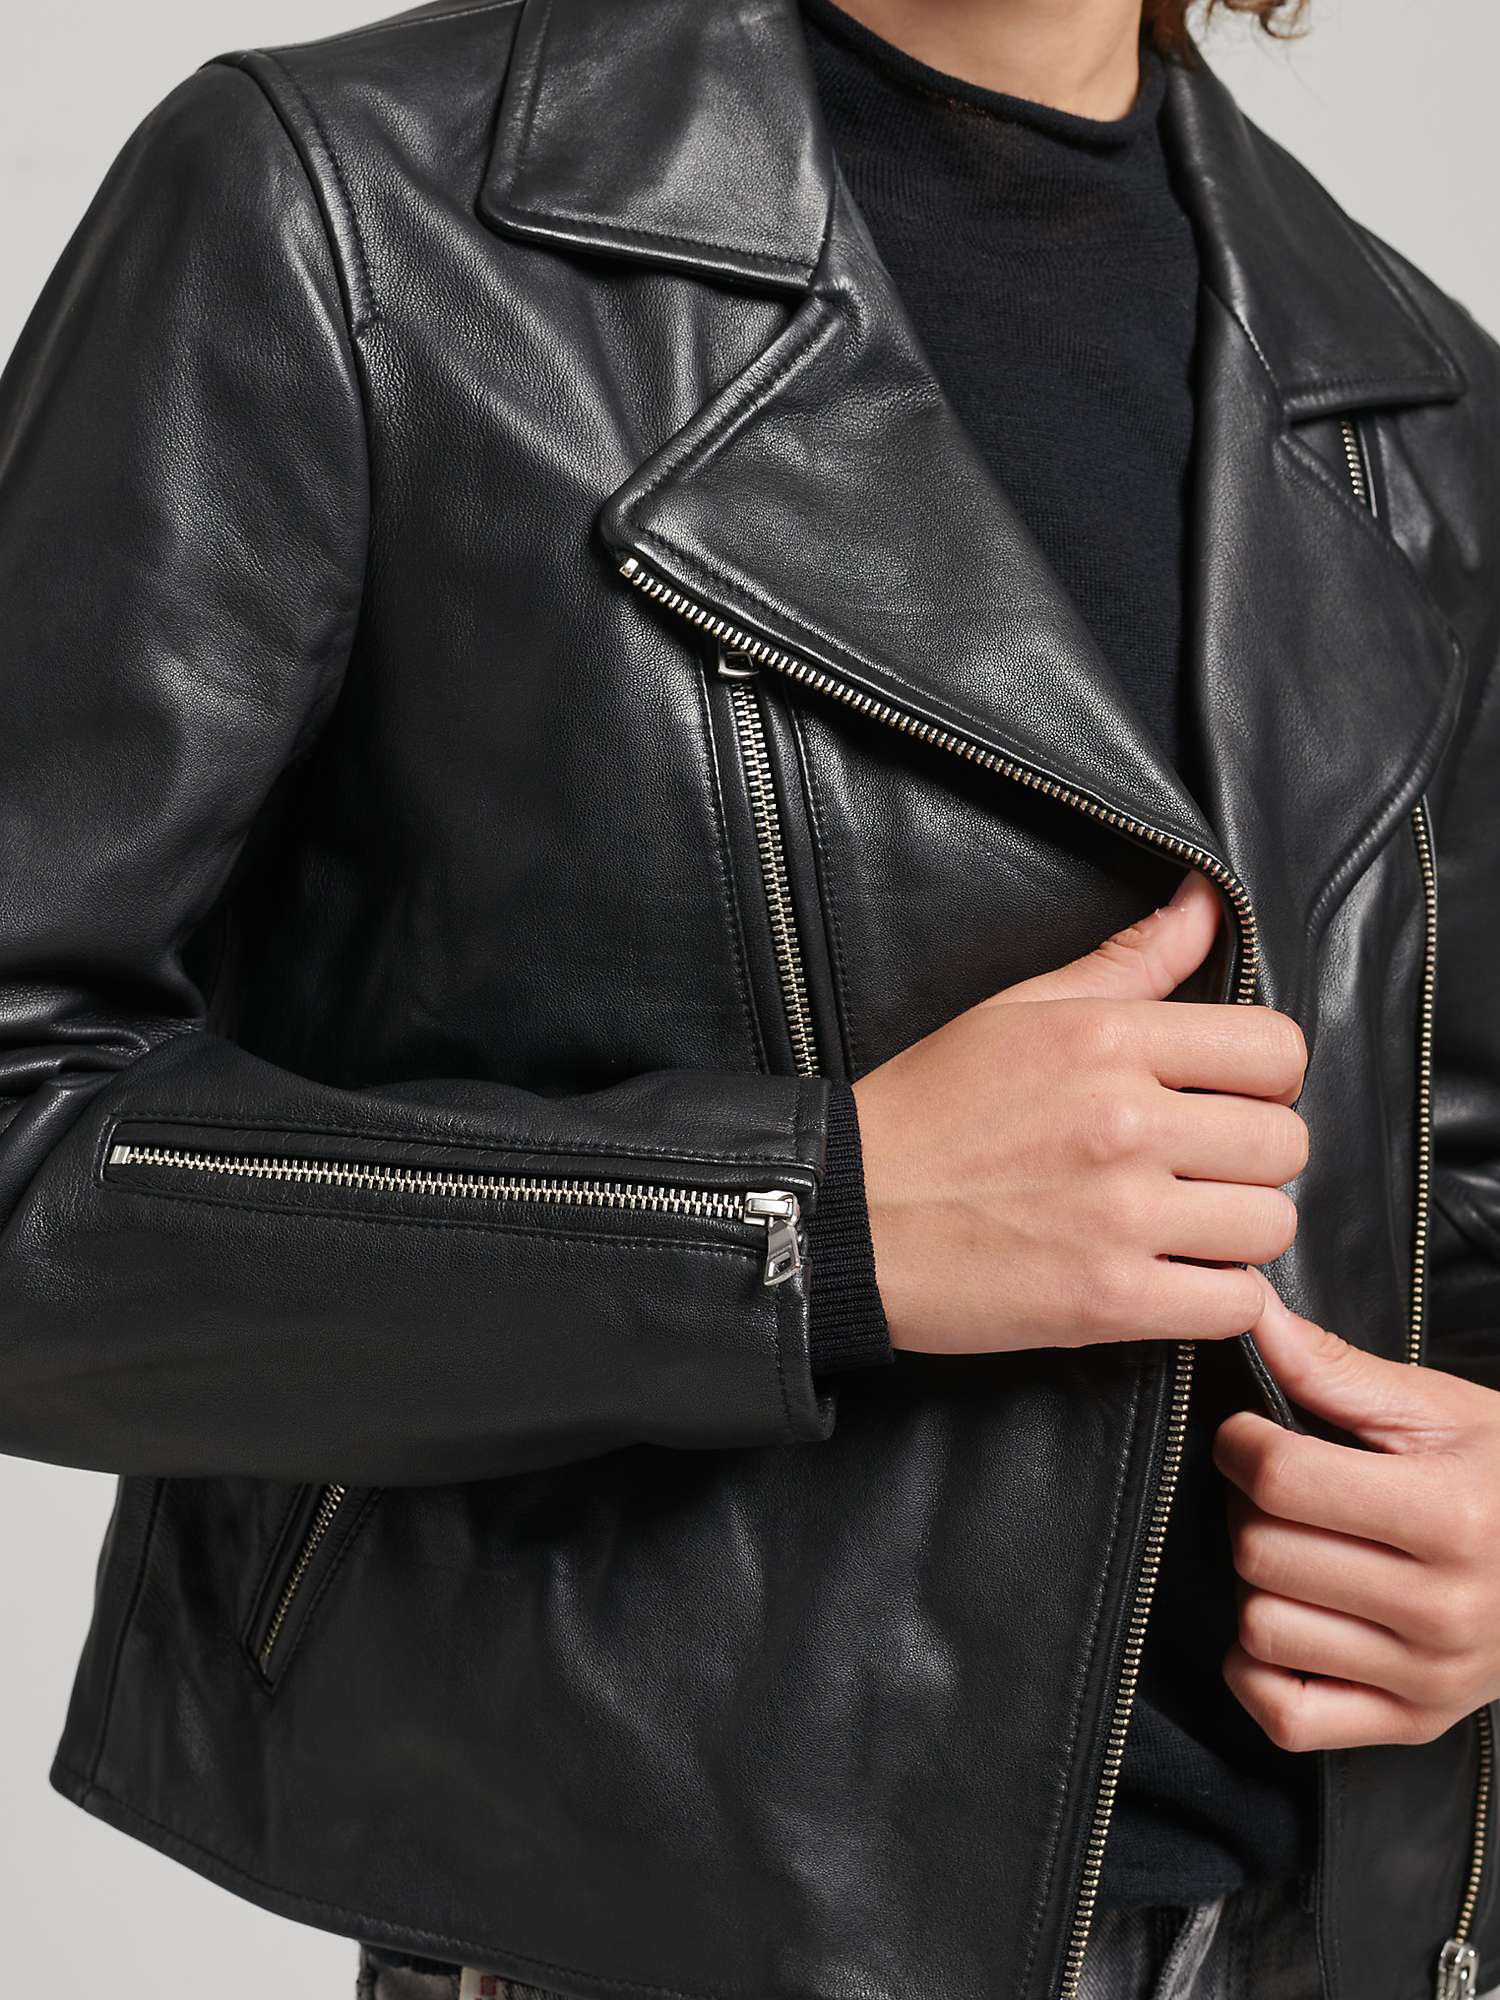 Superdry Leather Biker Jacket, Black at John Lewis & Partners